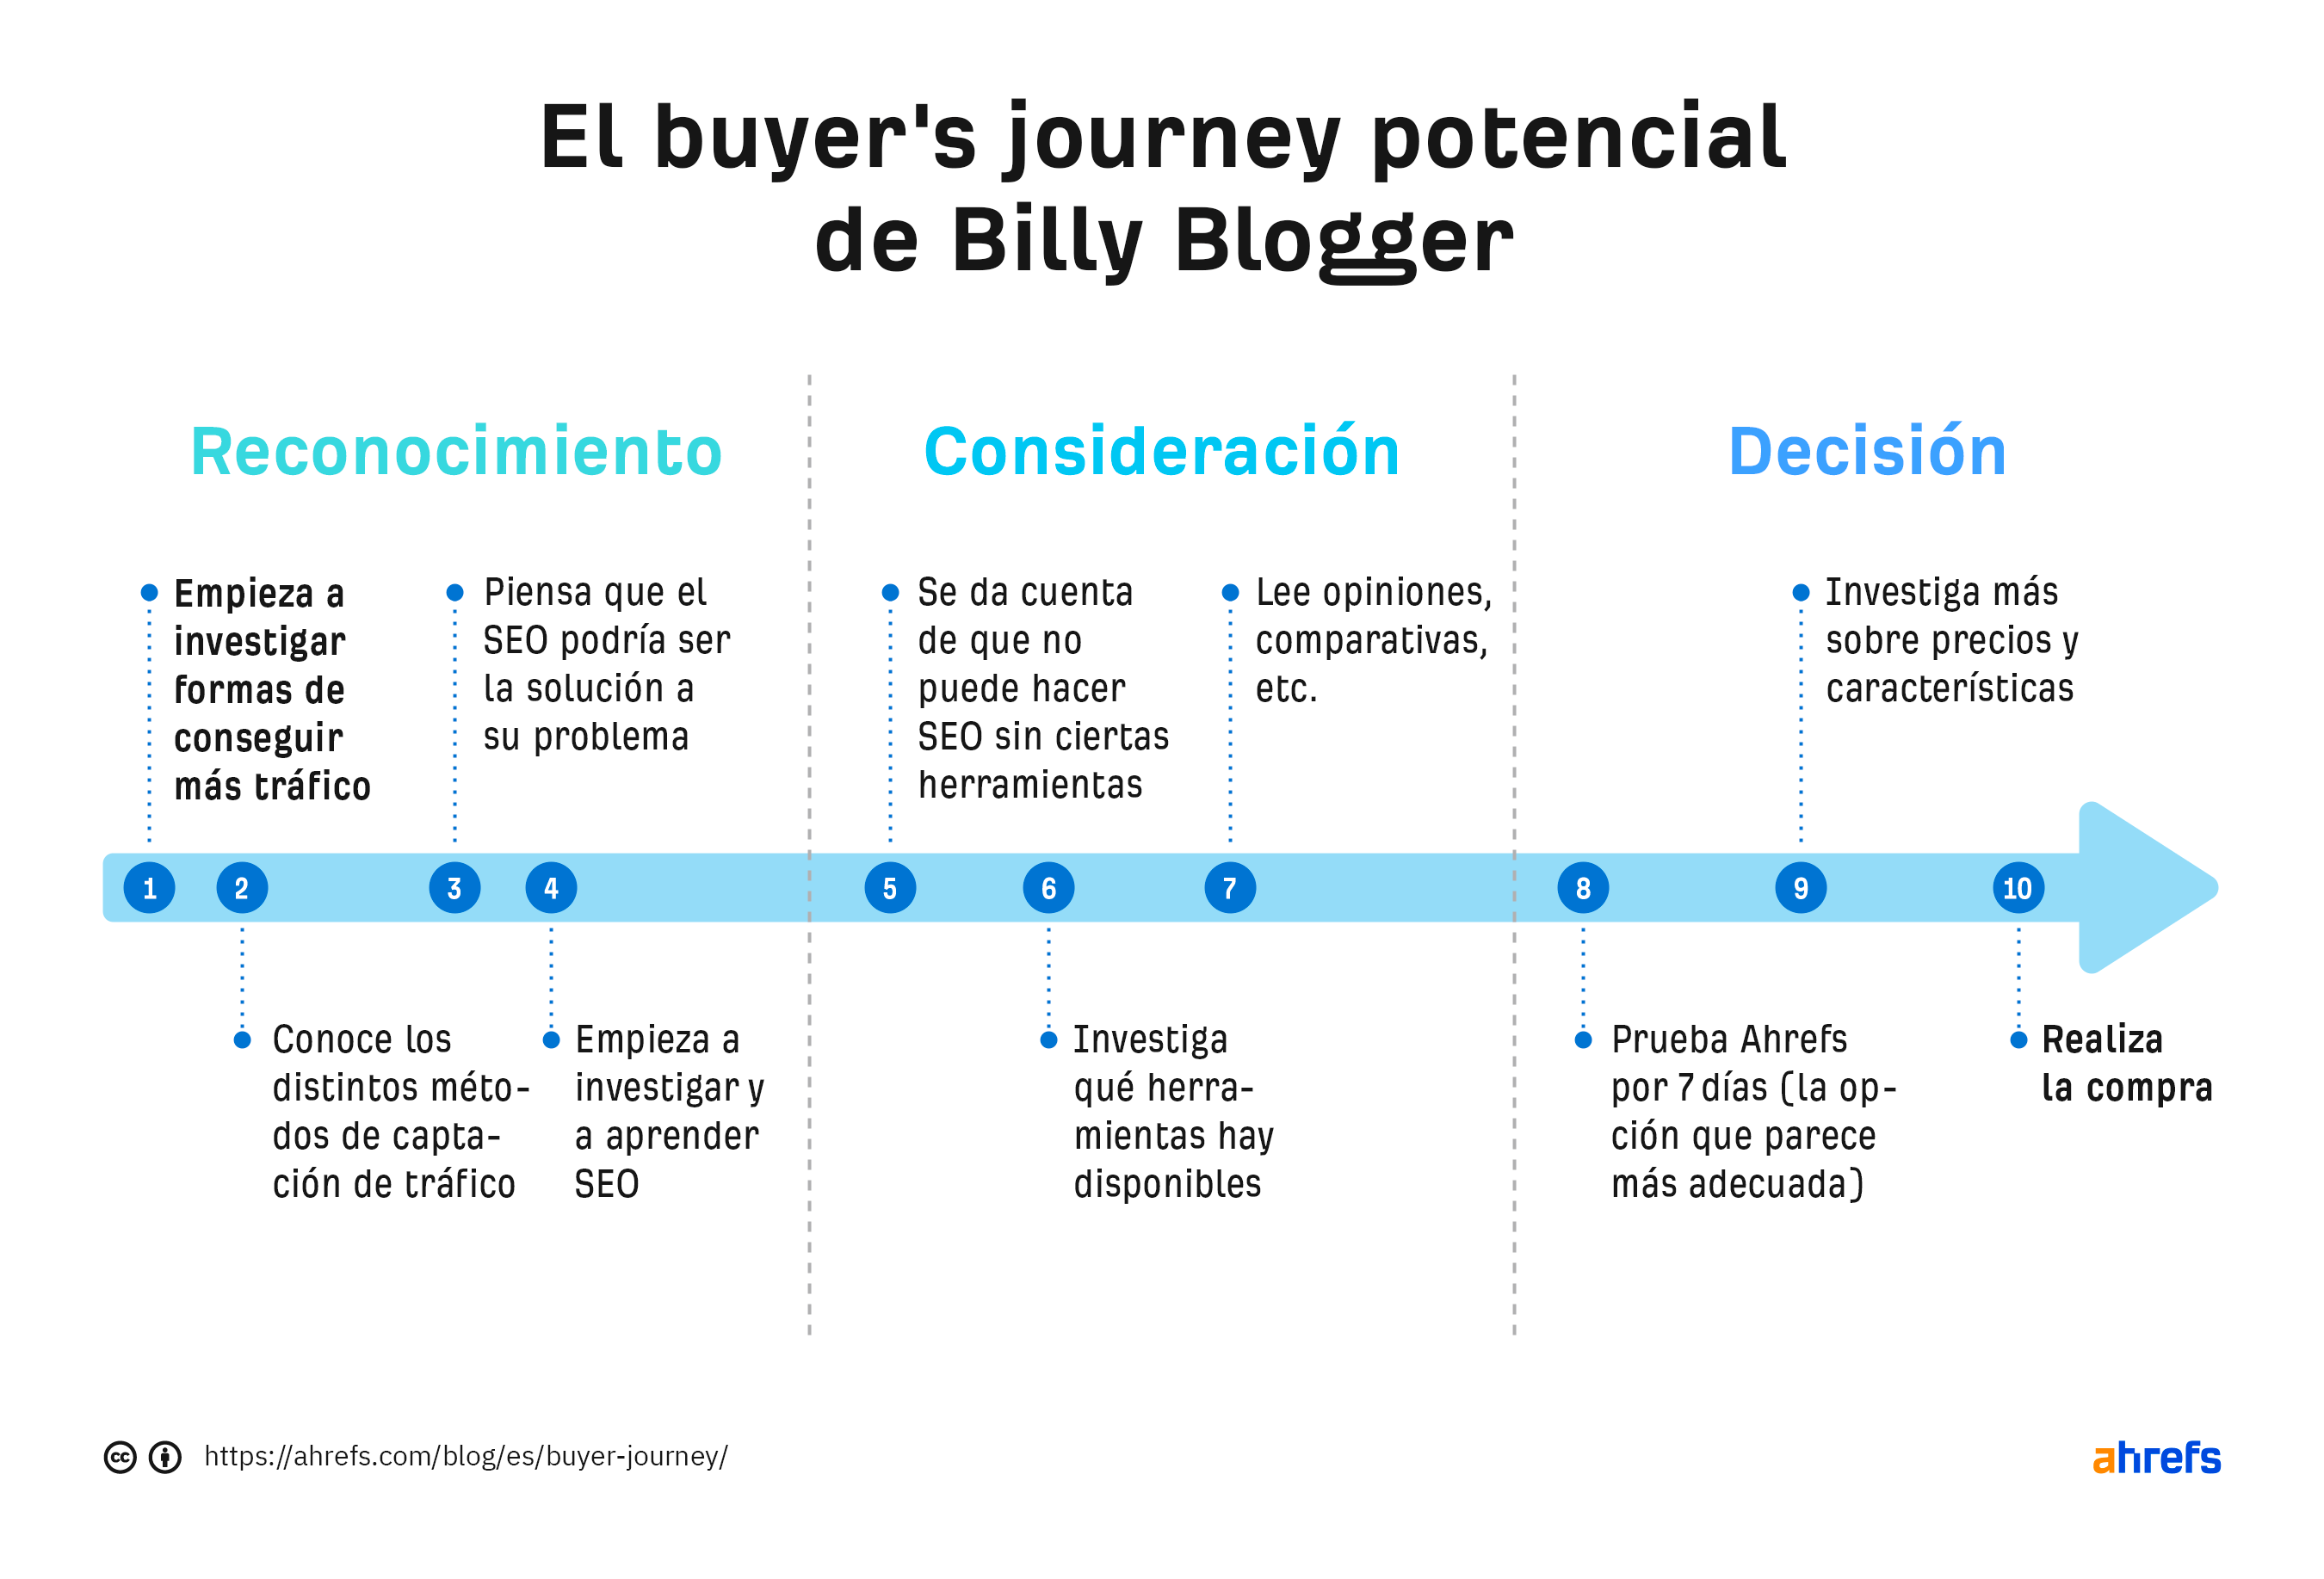 Línea de tiempo que muestra el ciclo de compra potencial de Billy, basado en las 3 etapas mencionadas.